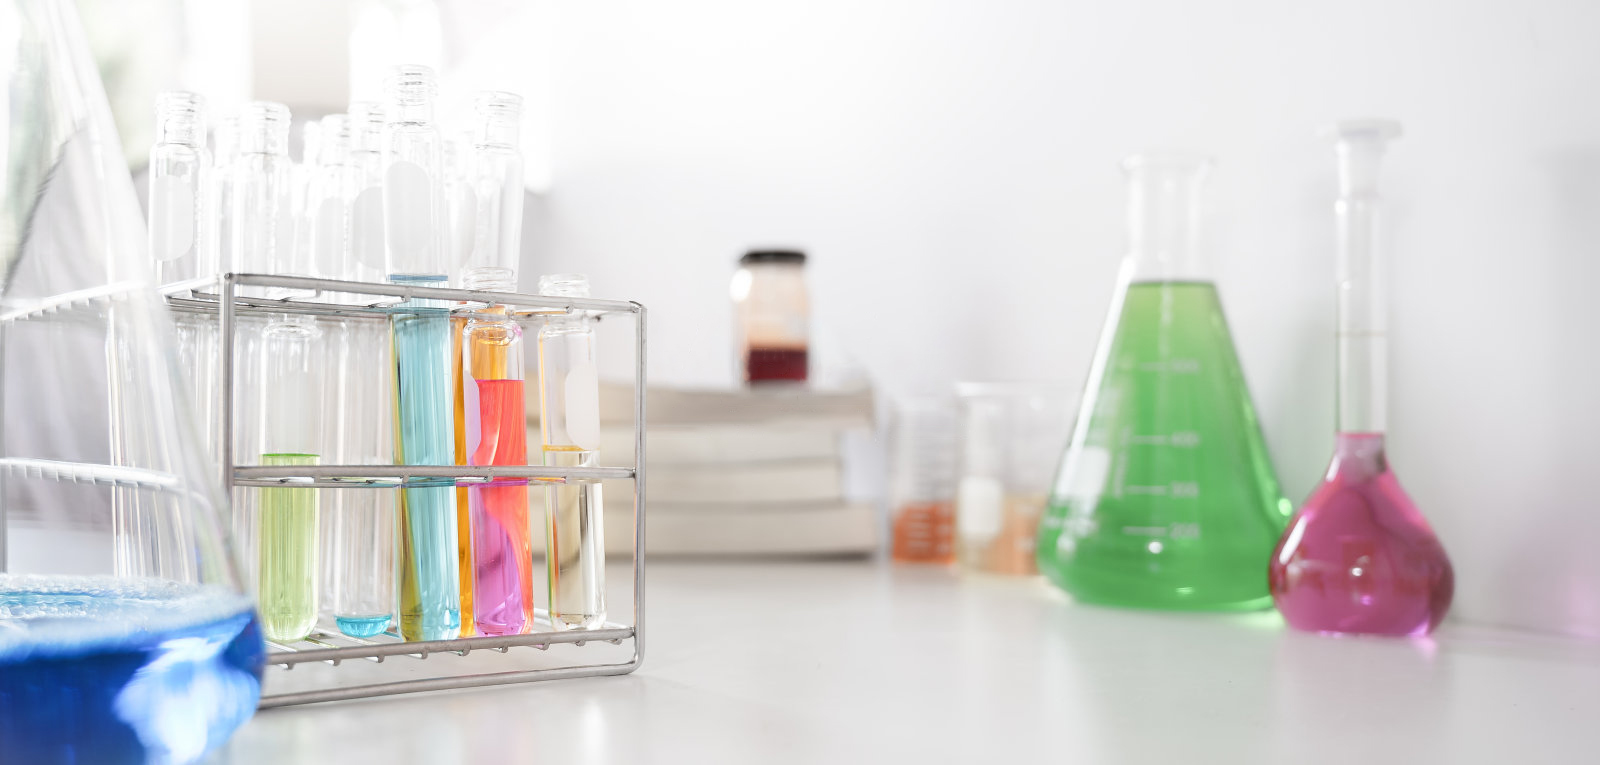 صورة لأدوات زجاجية مختبرية تحتوي على سوائل ملونة أثناء تجميعها على طاولة بيضاء معزولة على خلفية بيضاء.